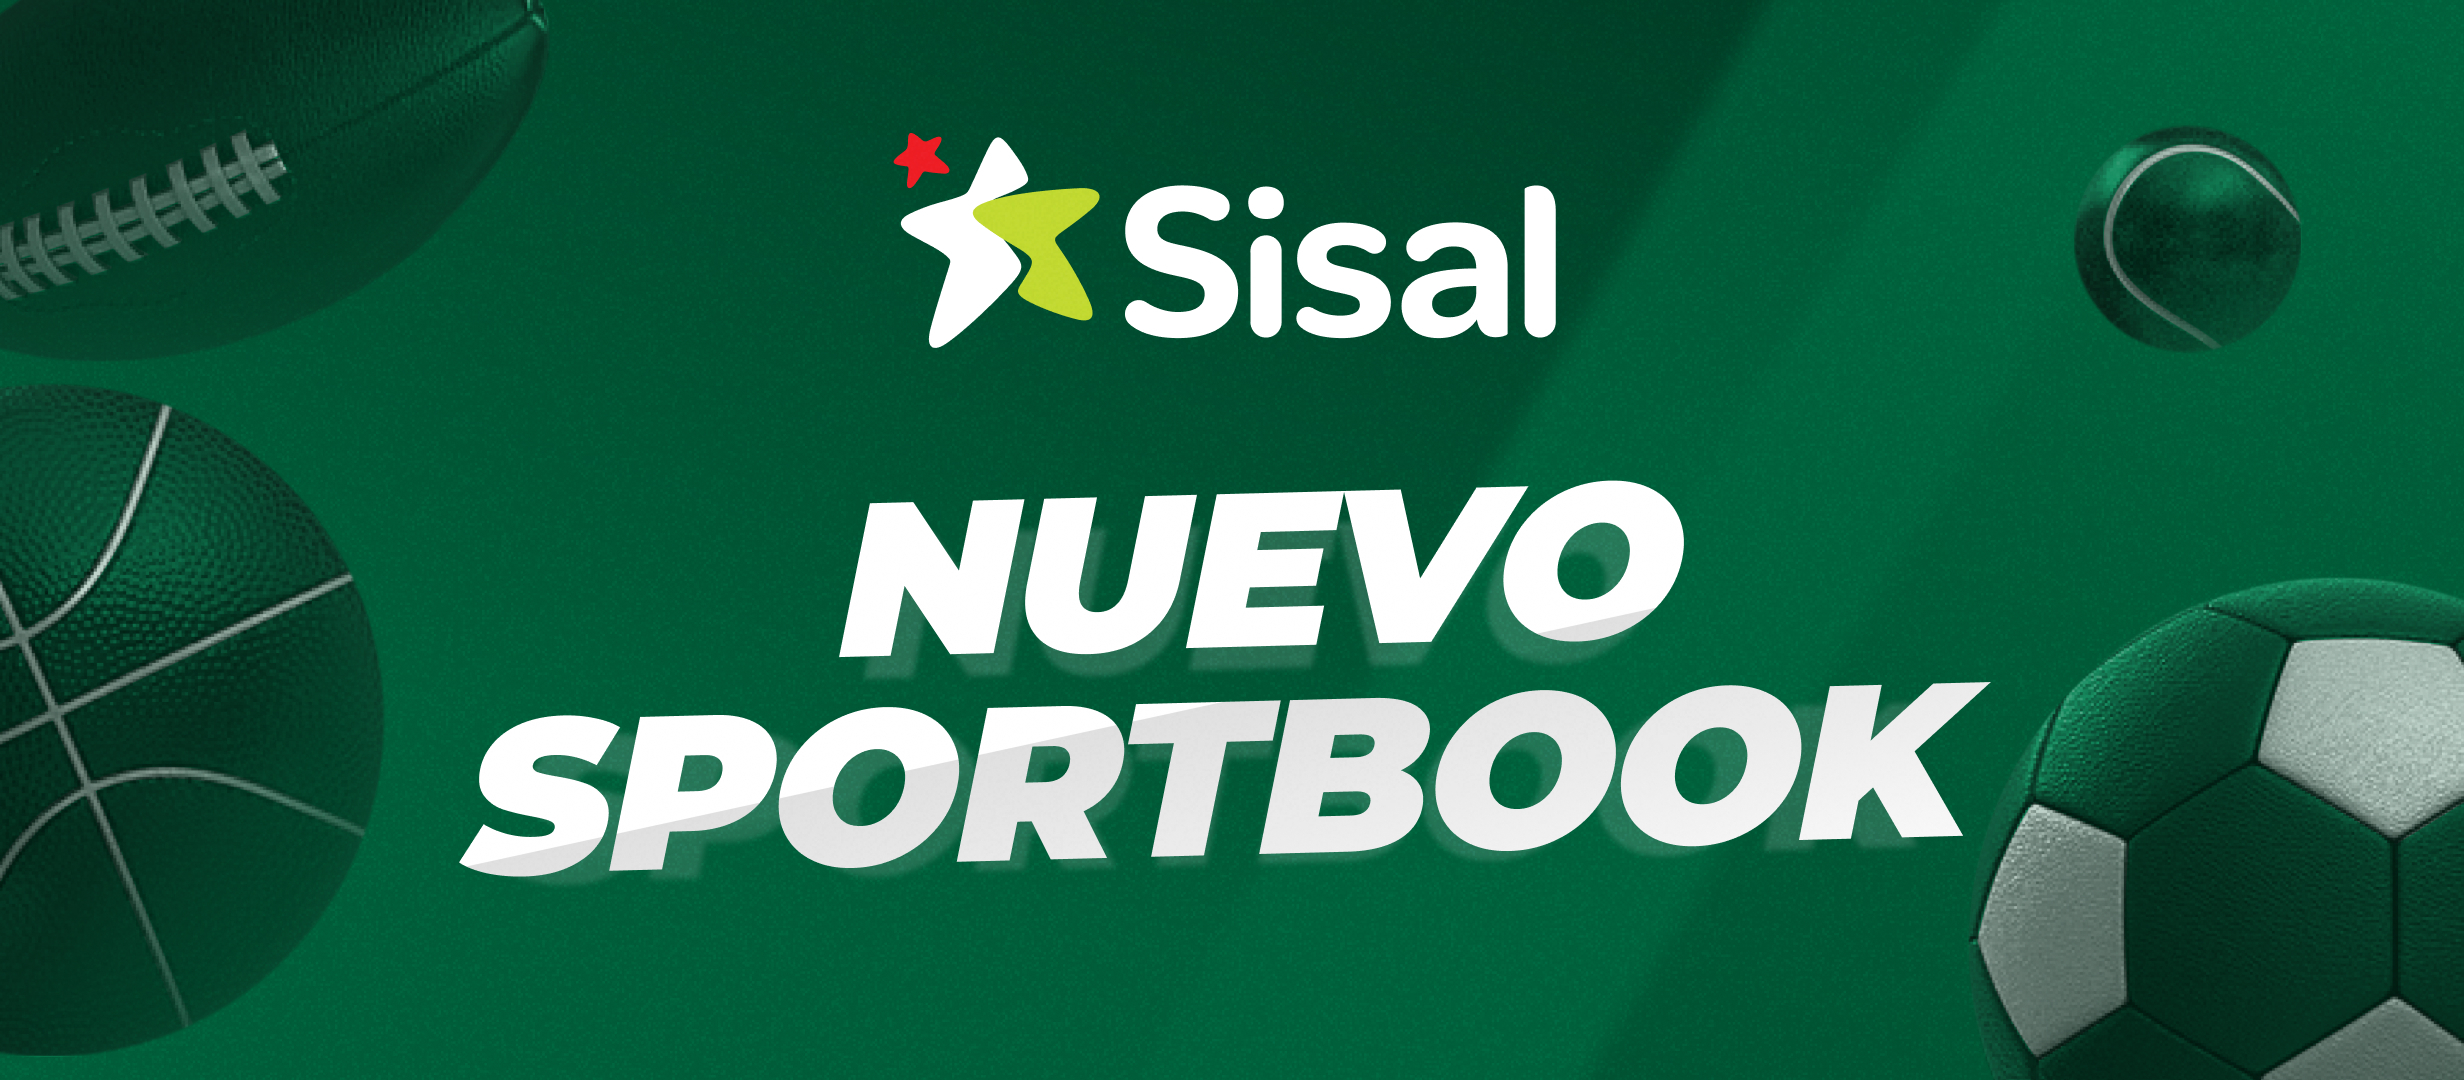 Sisal estrena sportbook con muchas novedades